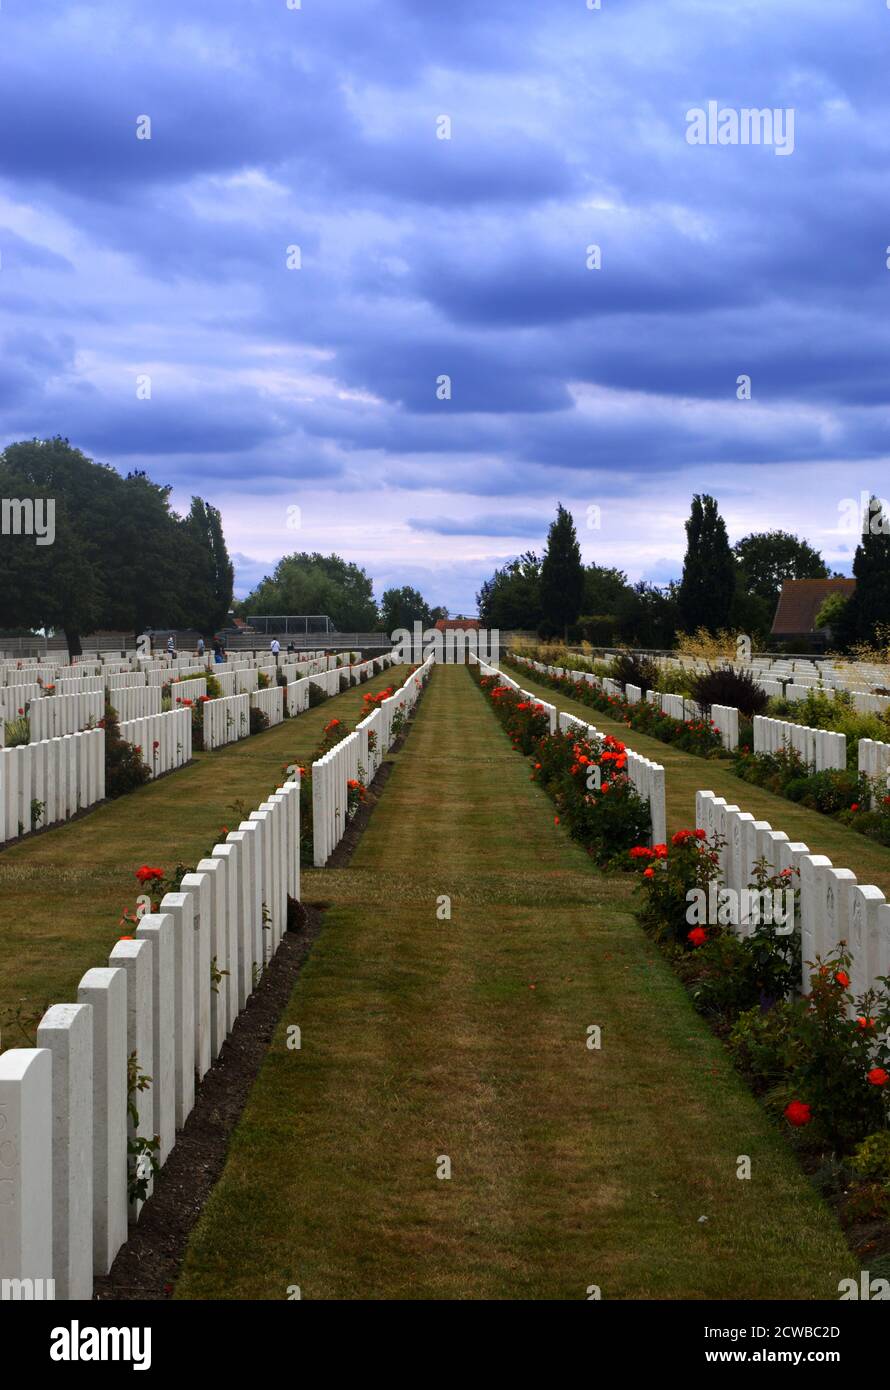 Sanctuary Wood Cemetery pour les morts de la première Guerre mondiale, à 5 km à l'est d'Ypres, Belgique. Sanctuary Wood a été nommé par les troupes britanniques en novembre 1914, lorsqu'il a été utilisé pour abriter les troupes. Les combats y ont eu lieu en septembre 1915 et ils ont été combattus par des soldats canadiens et allemands pendant la bataille du mont Sorrel au début de juin 1916. La majorité de ces tombes proviennent des batailles autour d'Ypres en 1914 et de l'offensive alliée à la fin de 1917. Banque D'Images